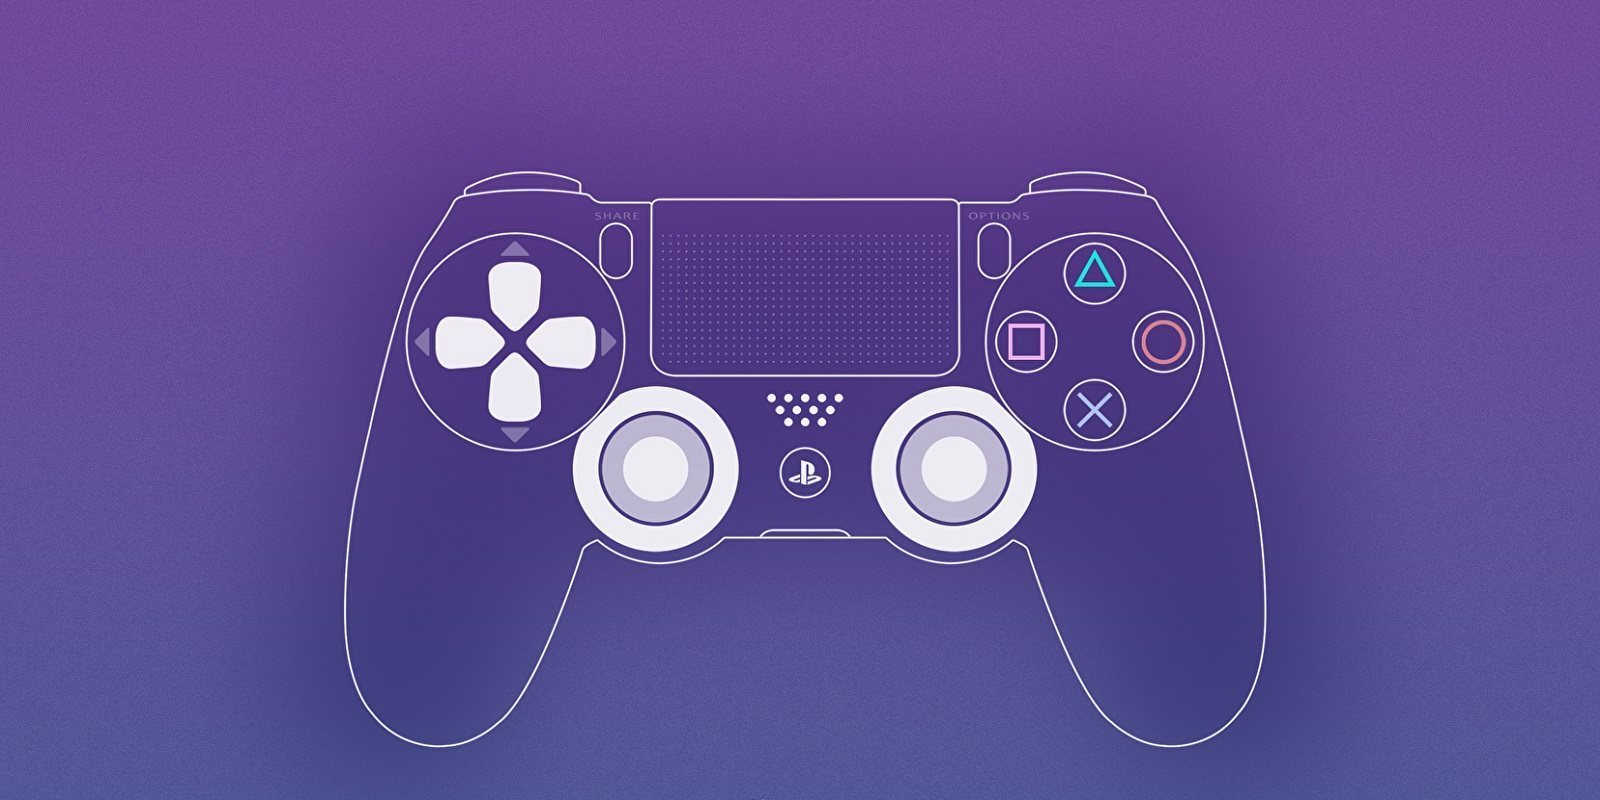 PS5 podría ofrecer "control dividido" a través del DualShock 5